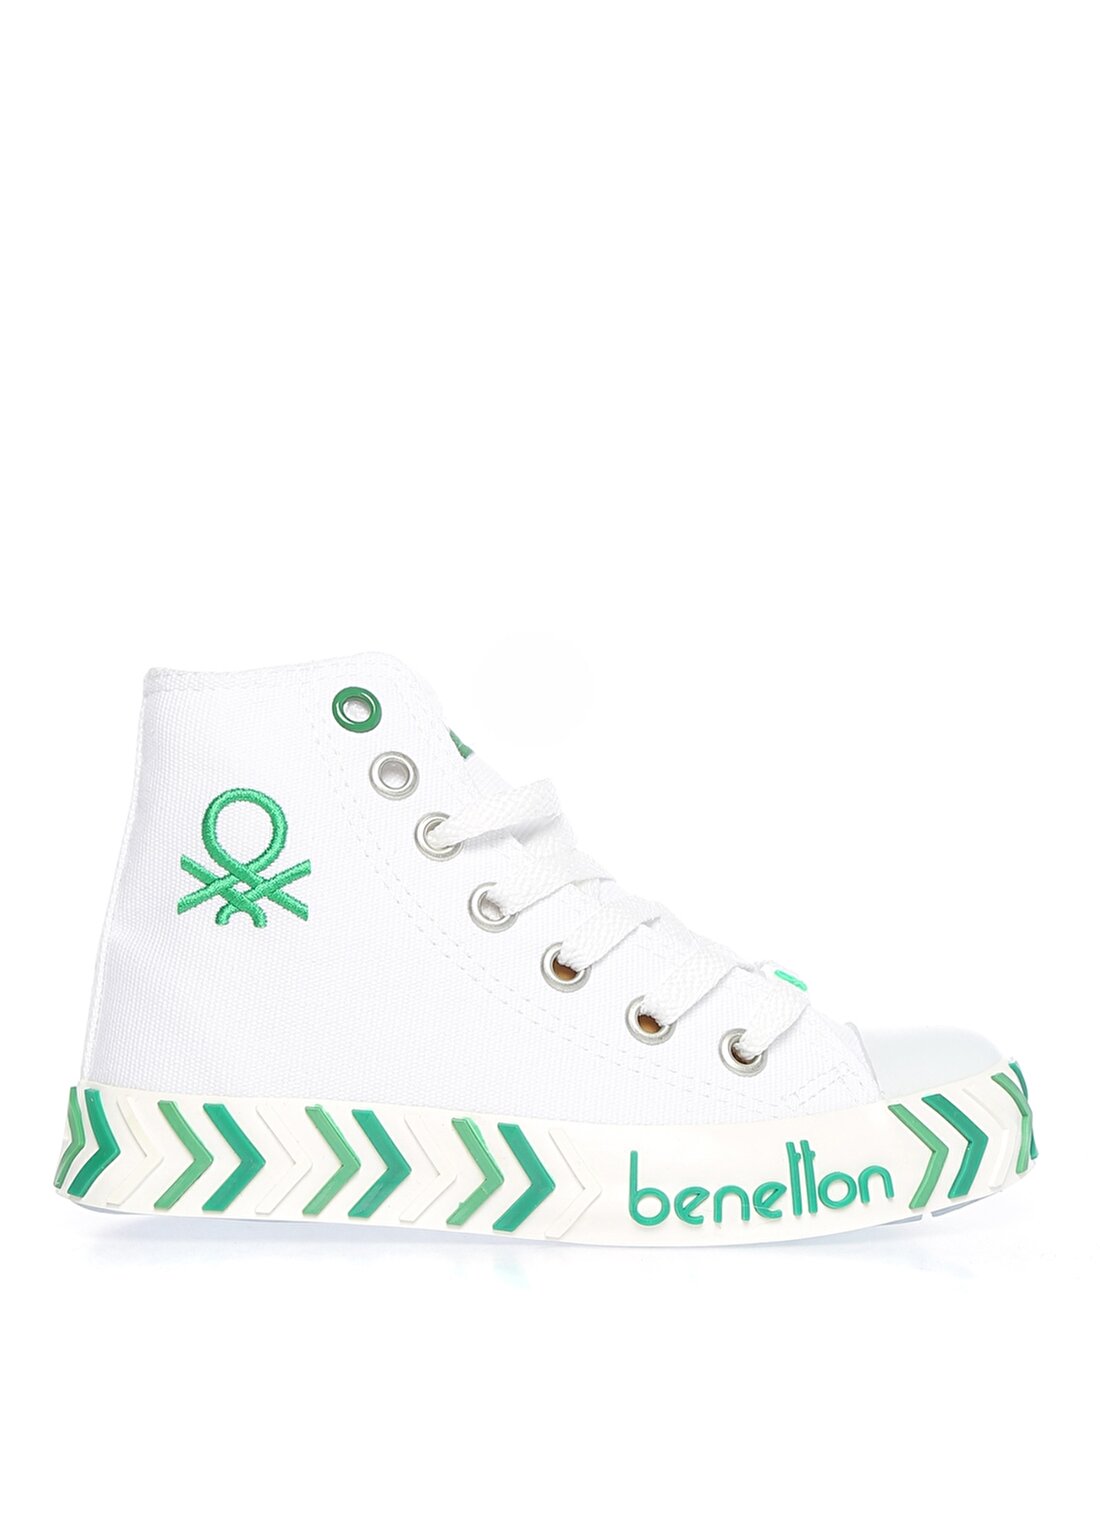 Benetton Beyaz Erkek Çocuk Keten Yürüyüş Ayakkabısı BN-30636 19